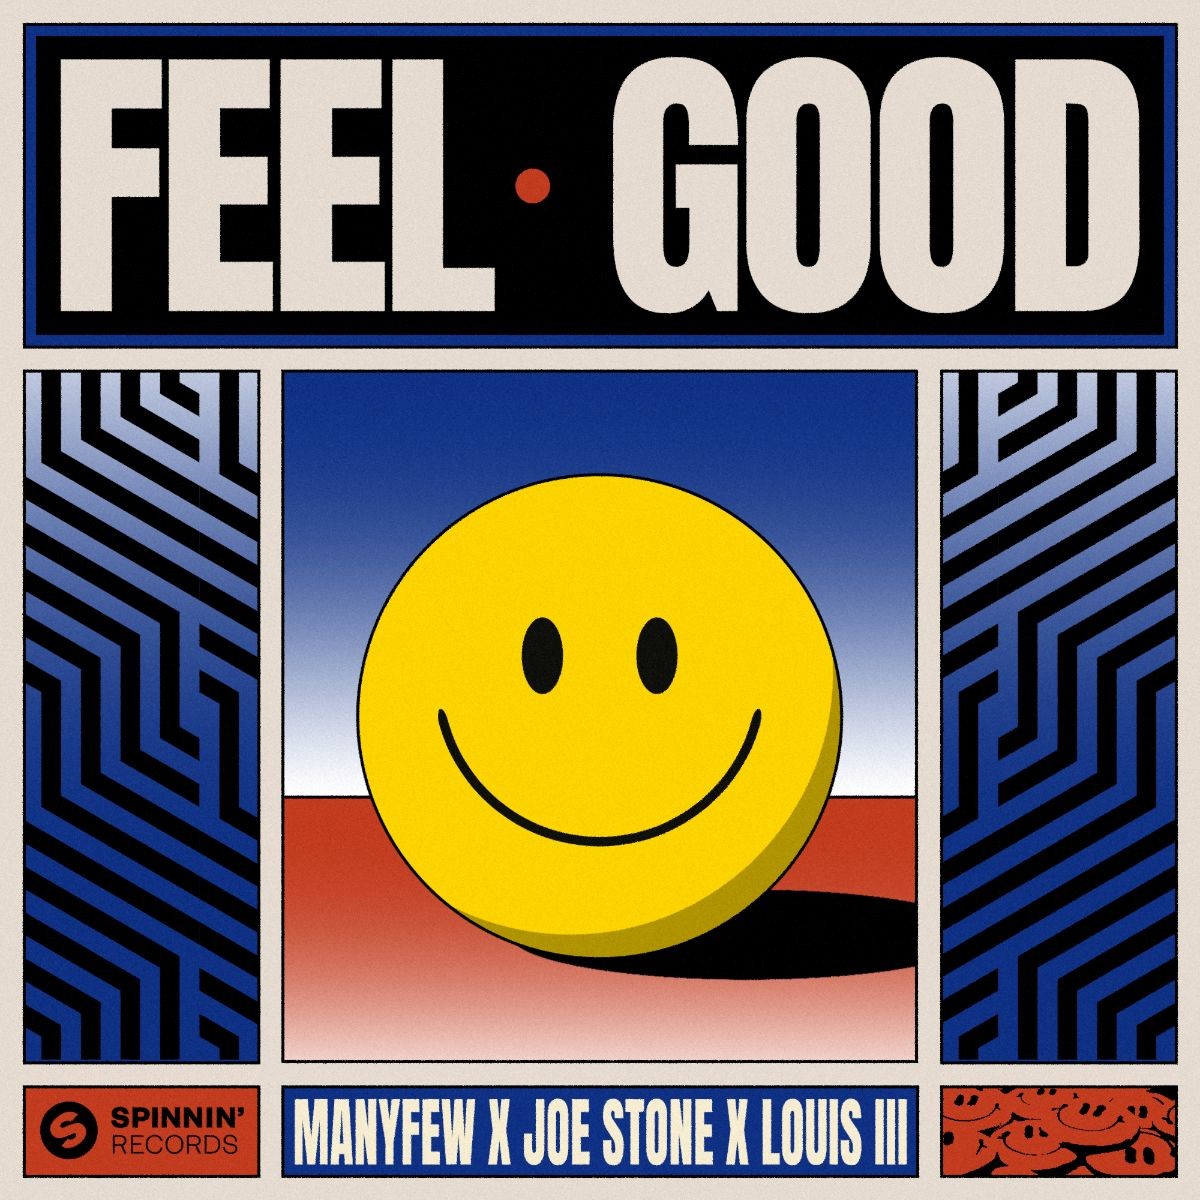 ManyFew X Joe Stone X Louis III Making You ‘Feel Good’!